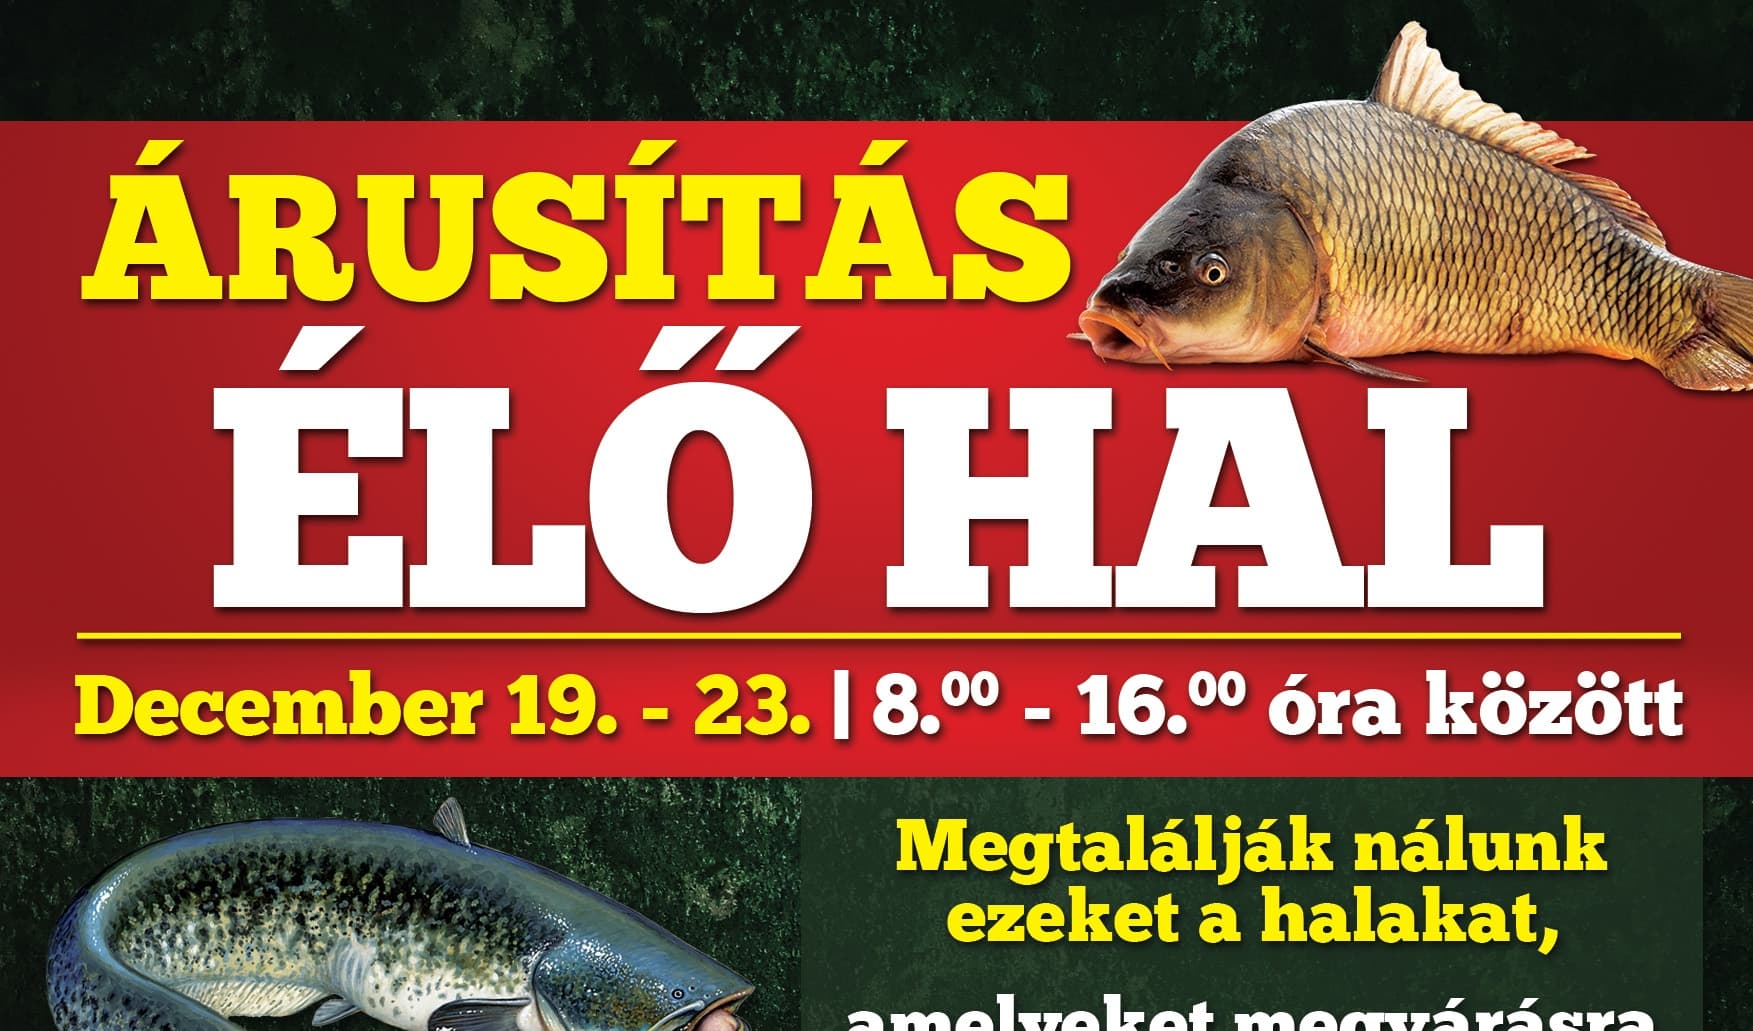 Karácsonyi halvásár Dunaszerdahelyen: válogasson kedvére a bőséges kínálatból, a halpucolásra pedig ne legyen gondja!